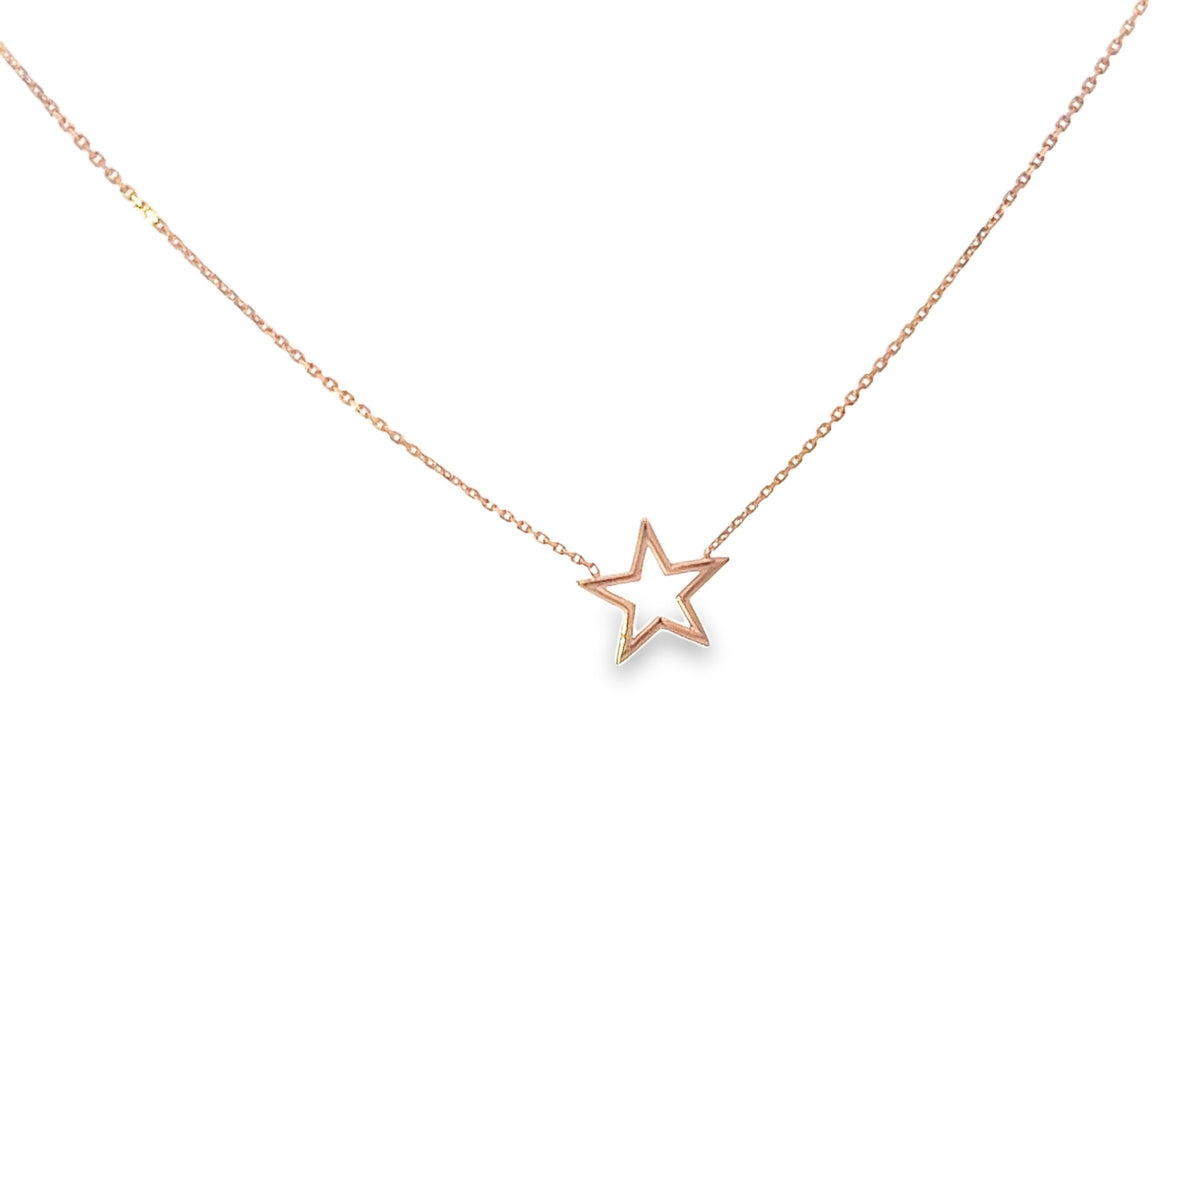 Ladies 14k Rose Gold adjustable star necklace